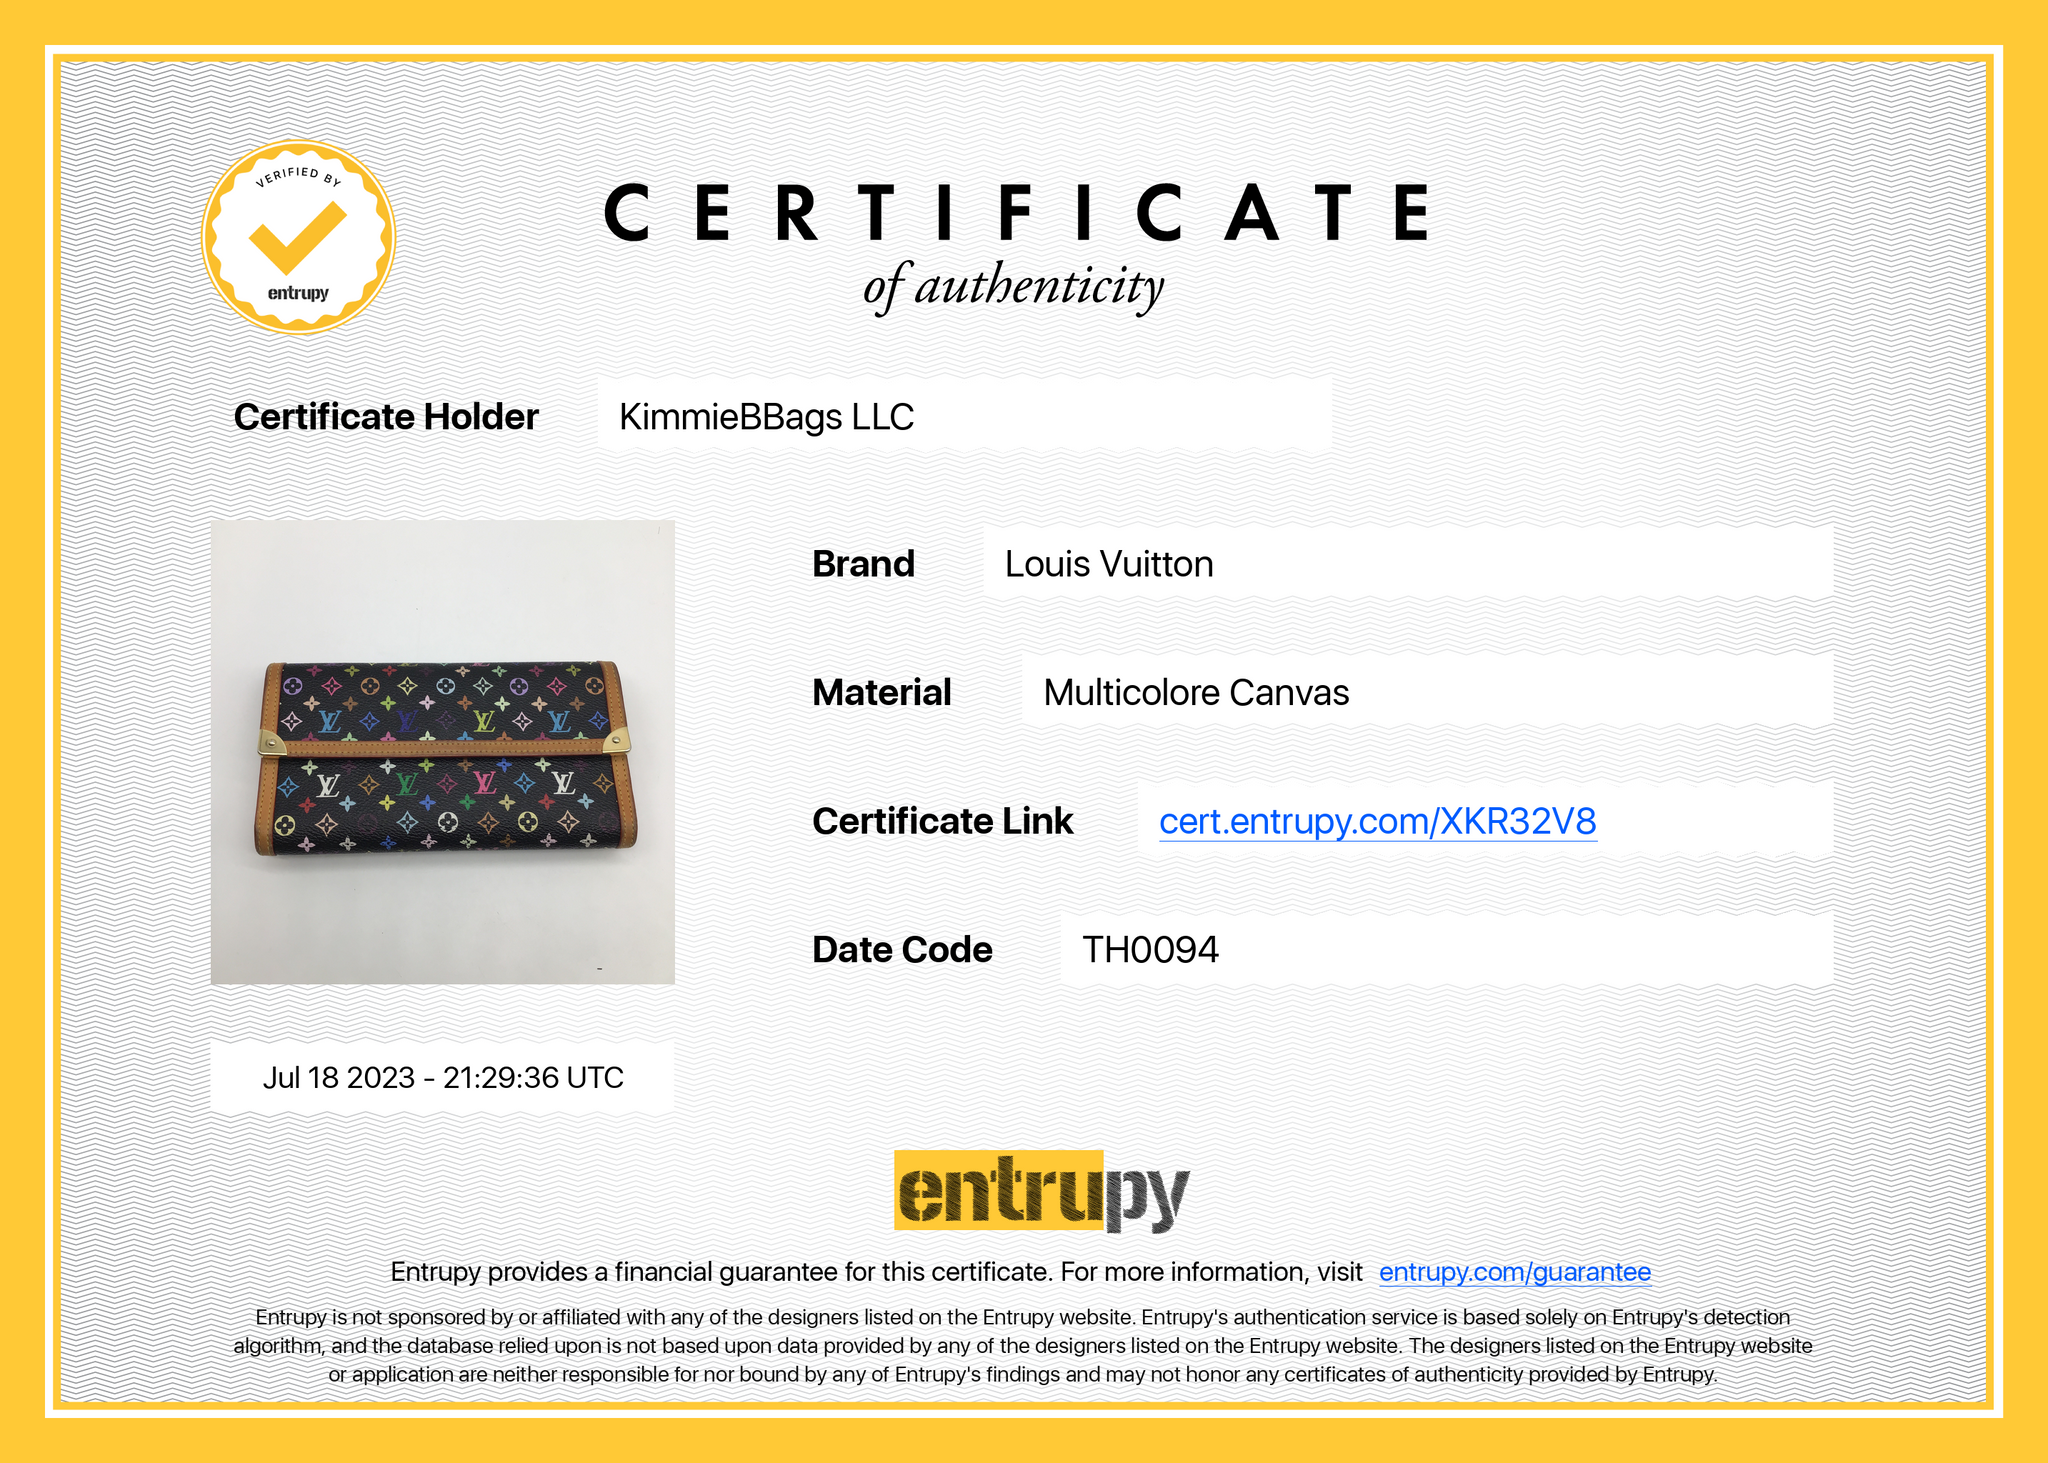 Louis Vuitton Yellow Epi Leather Porte Tresor International Wallet